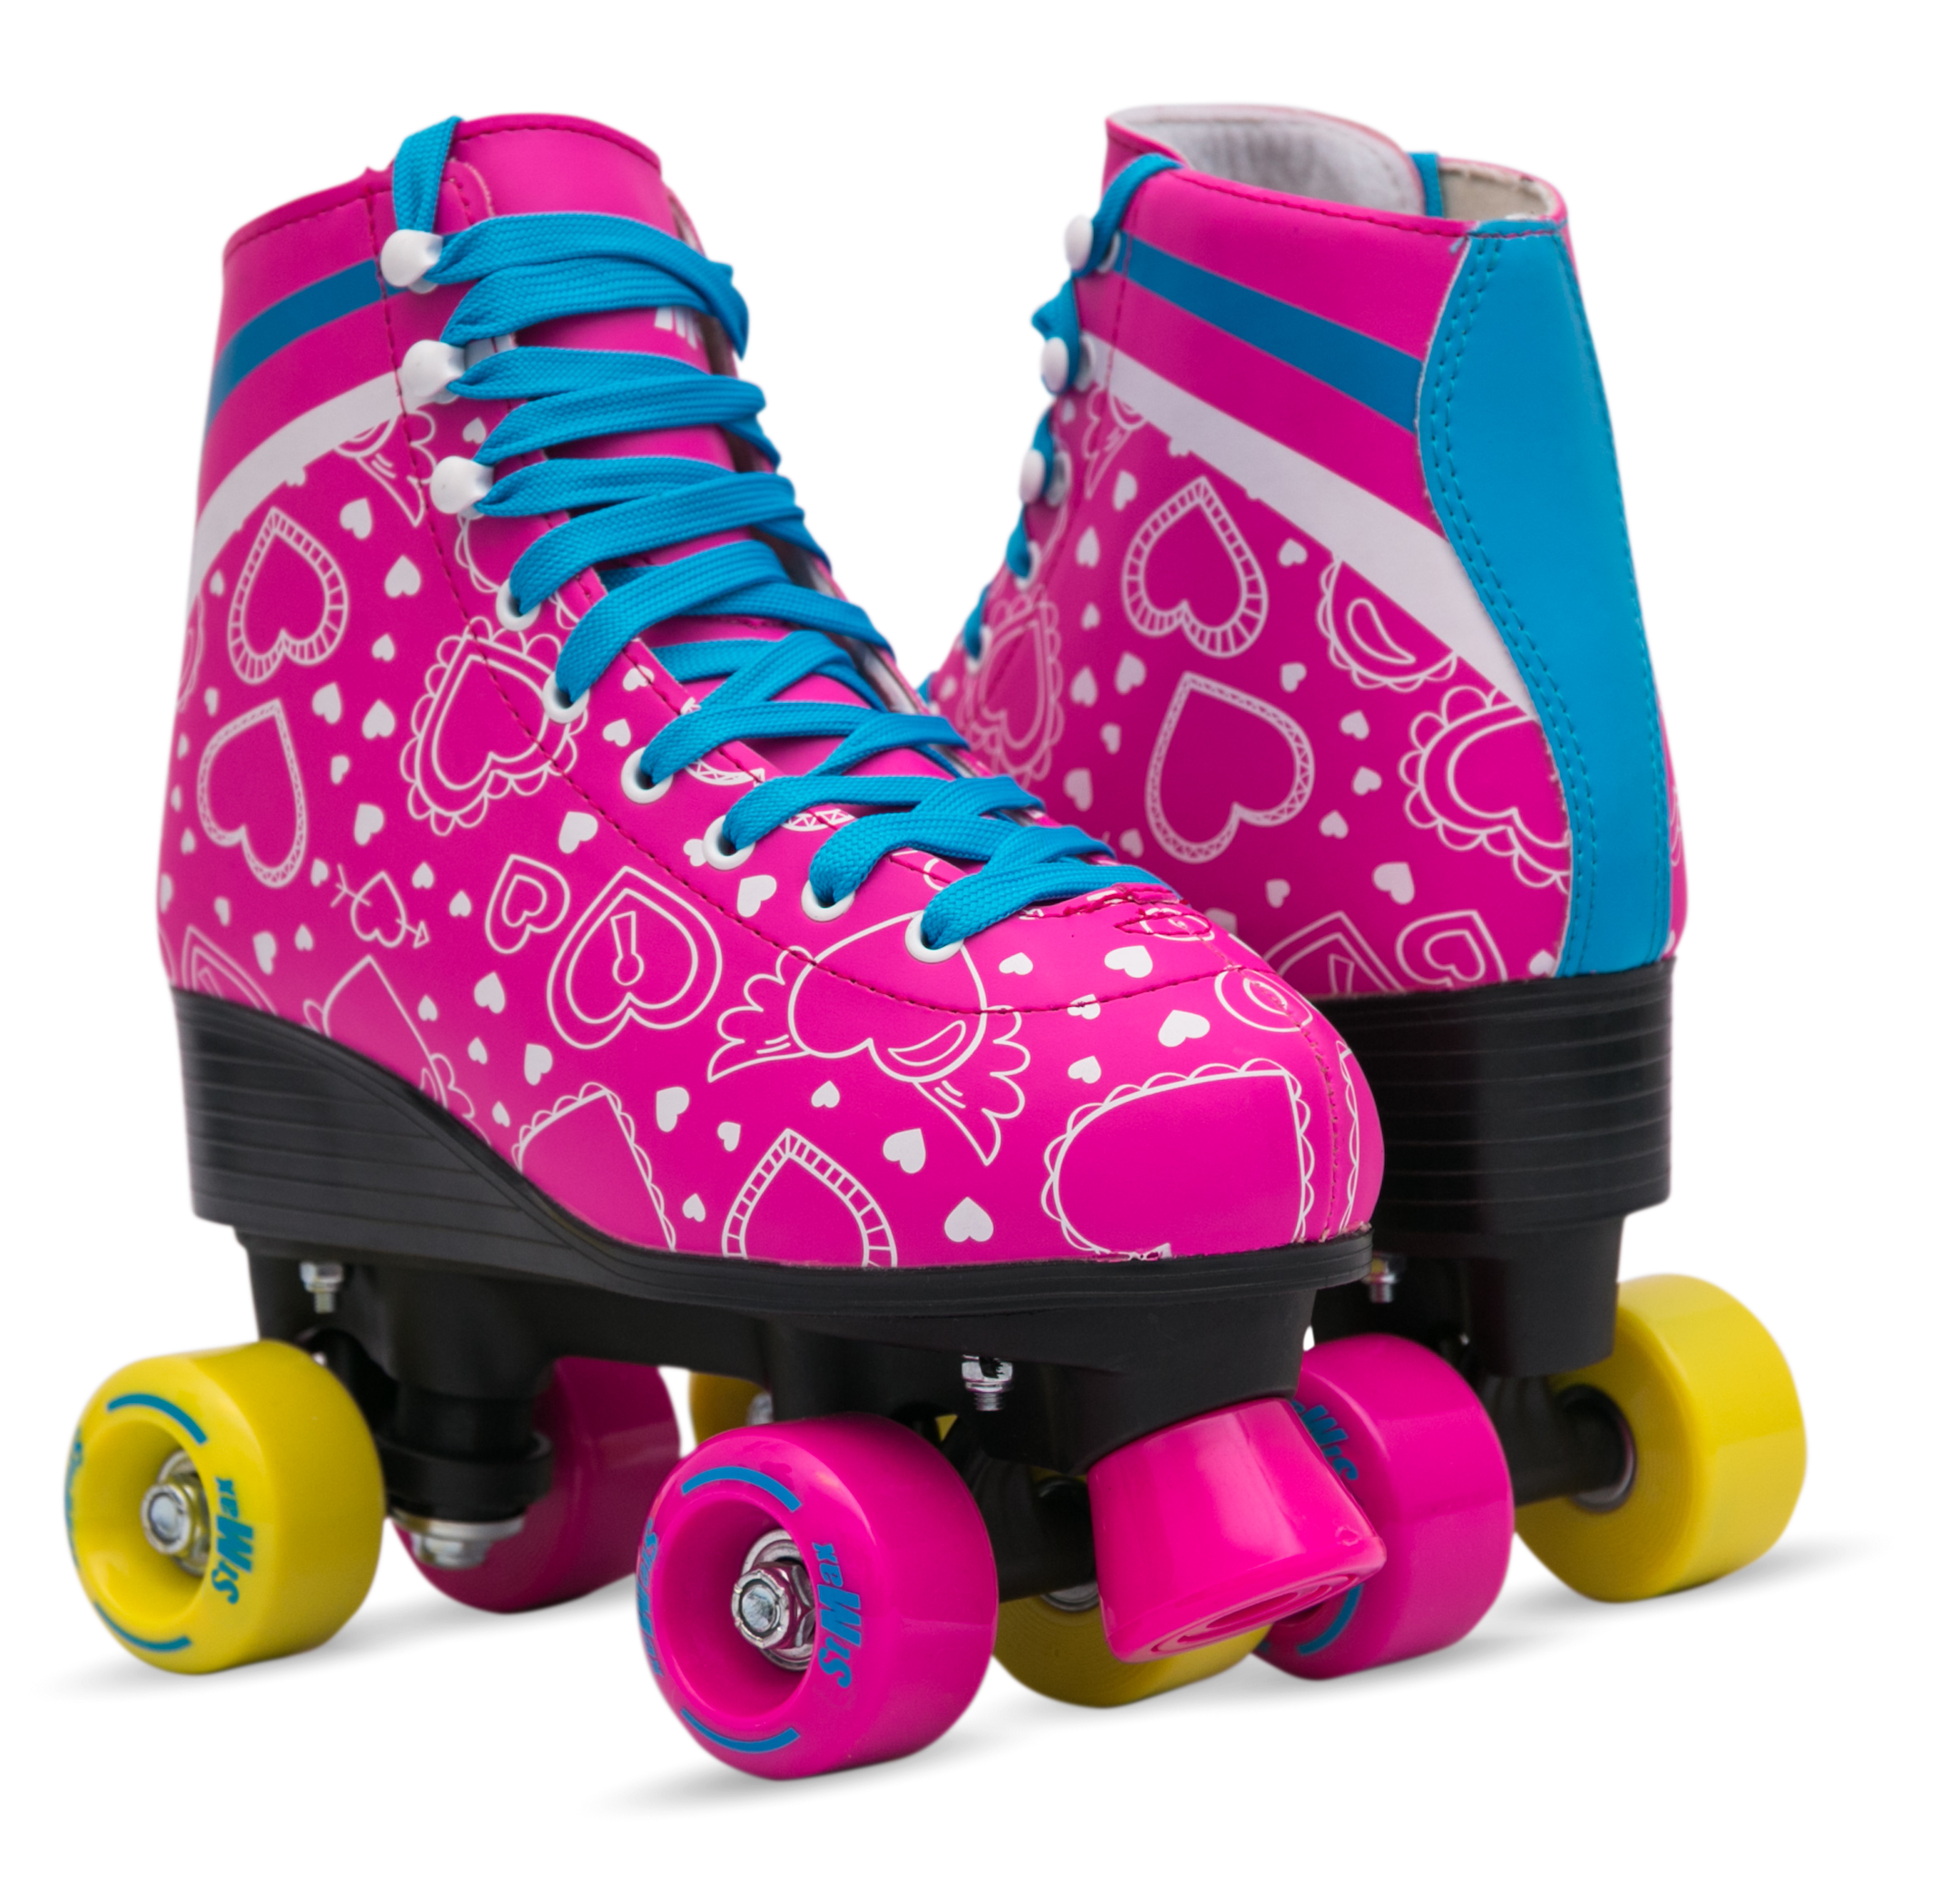 Roller Skates for Women Size 8 Quad blades Derby Pink Blue Heart 